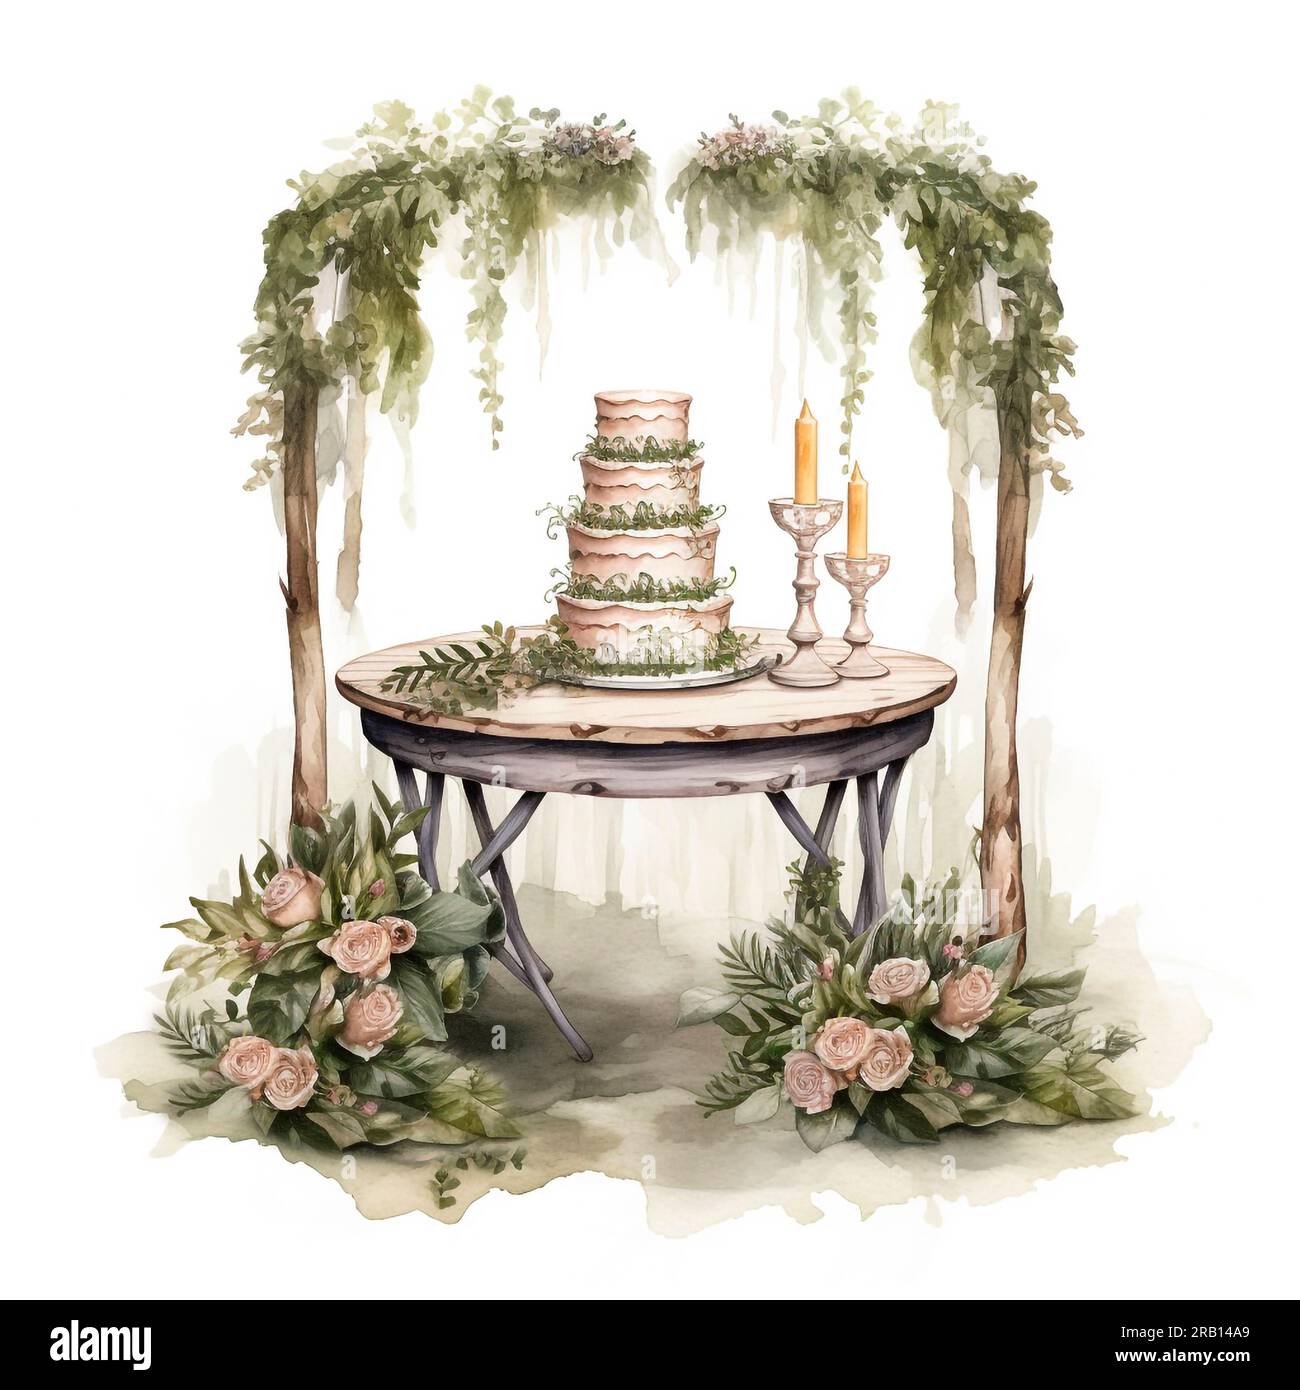 Torta nuziale sotto l'arco decorata con rose e vegetazione, illustrazione ad acquerello dipinta a mano Foto Stock